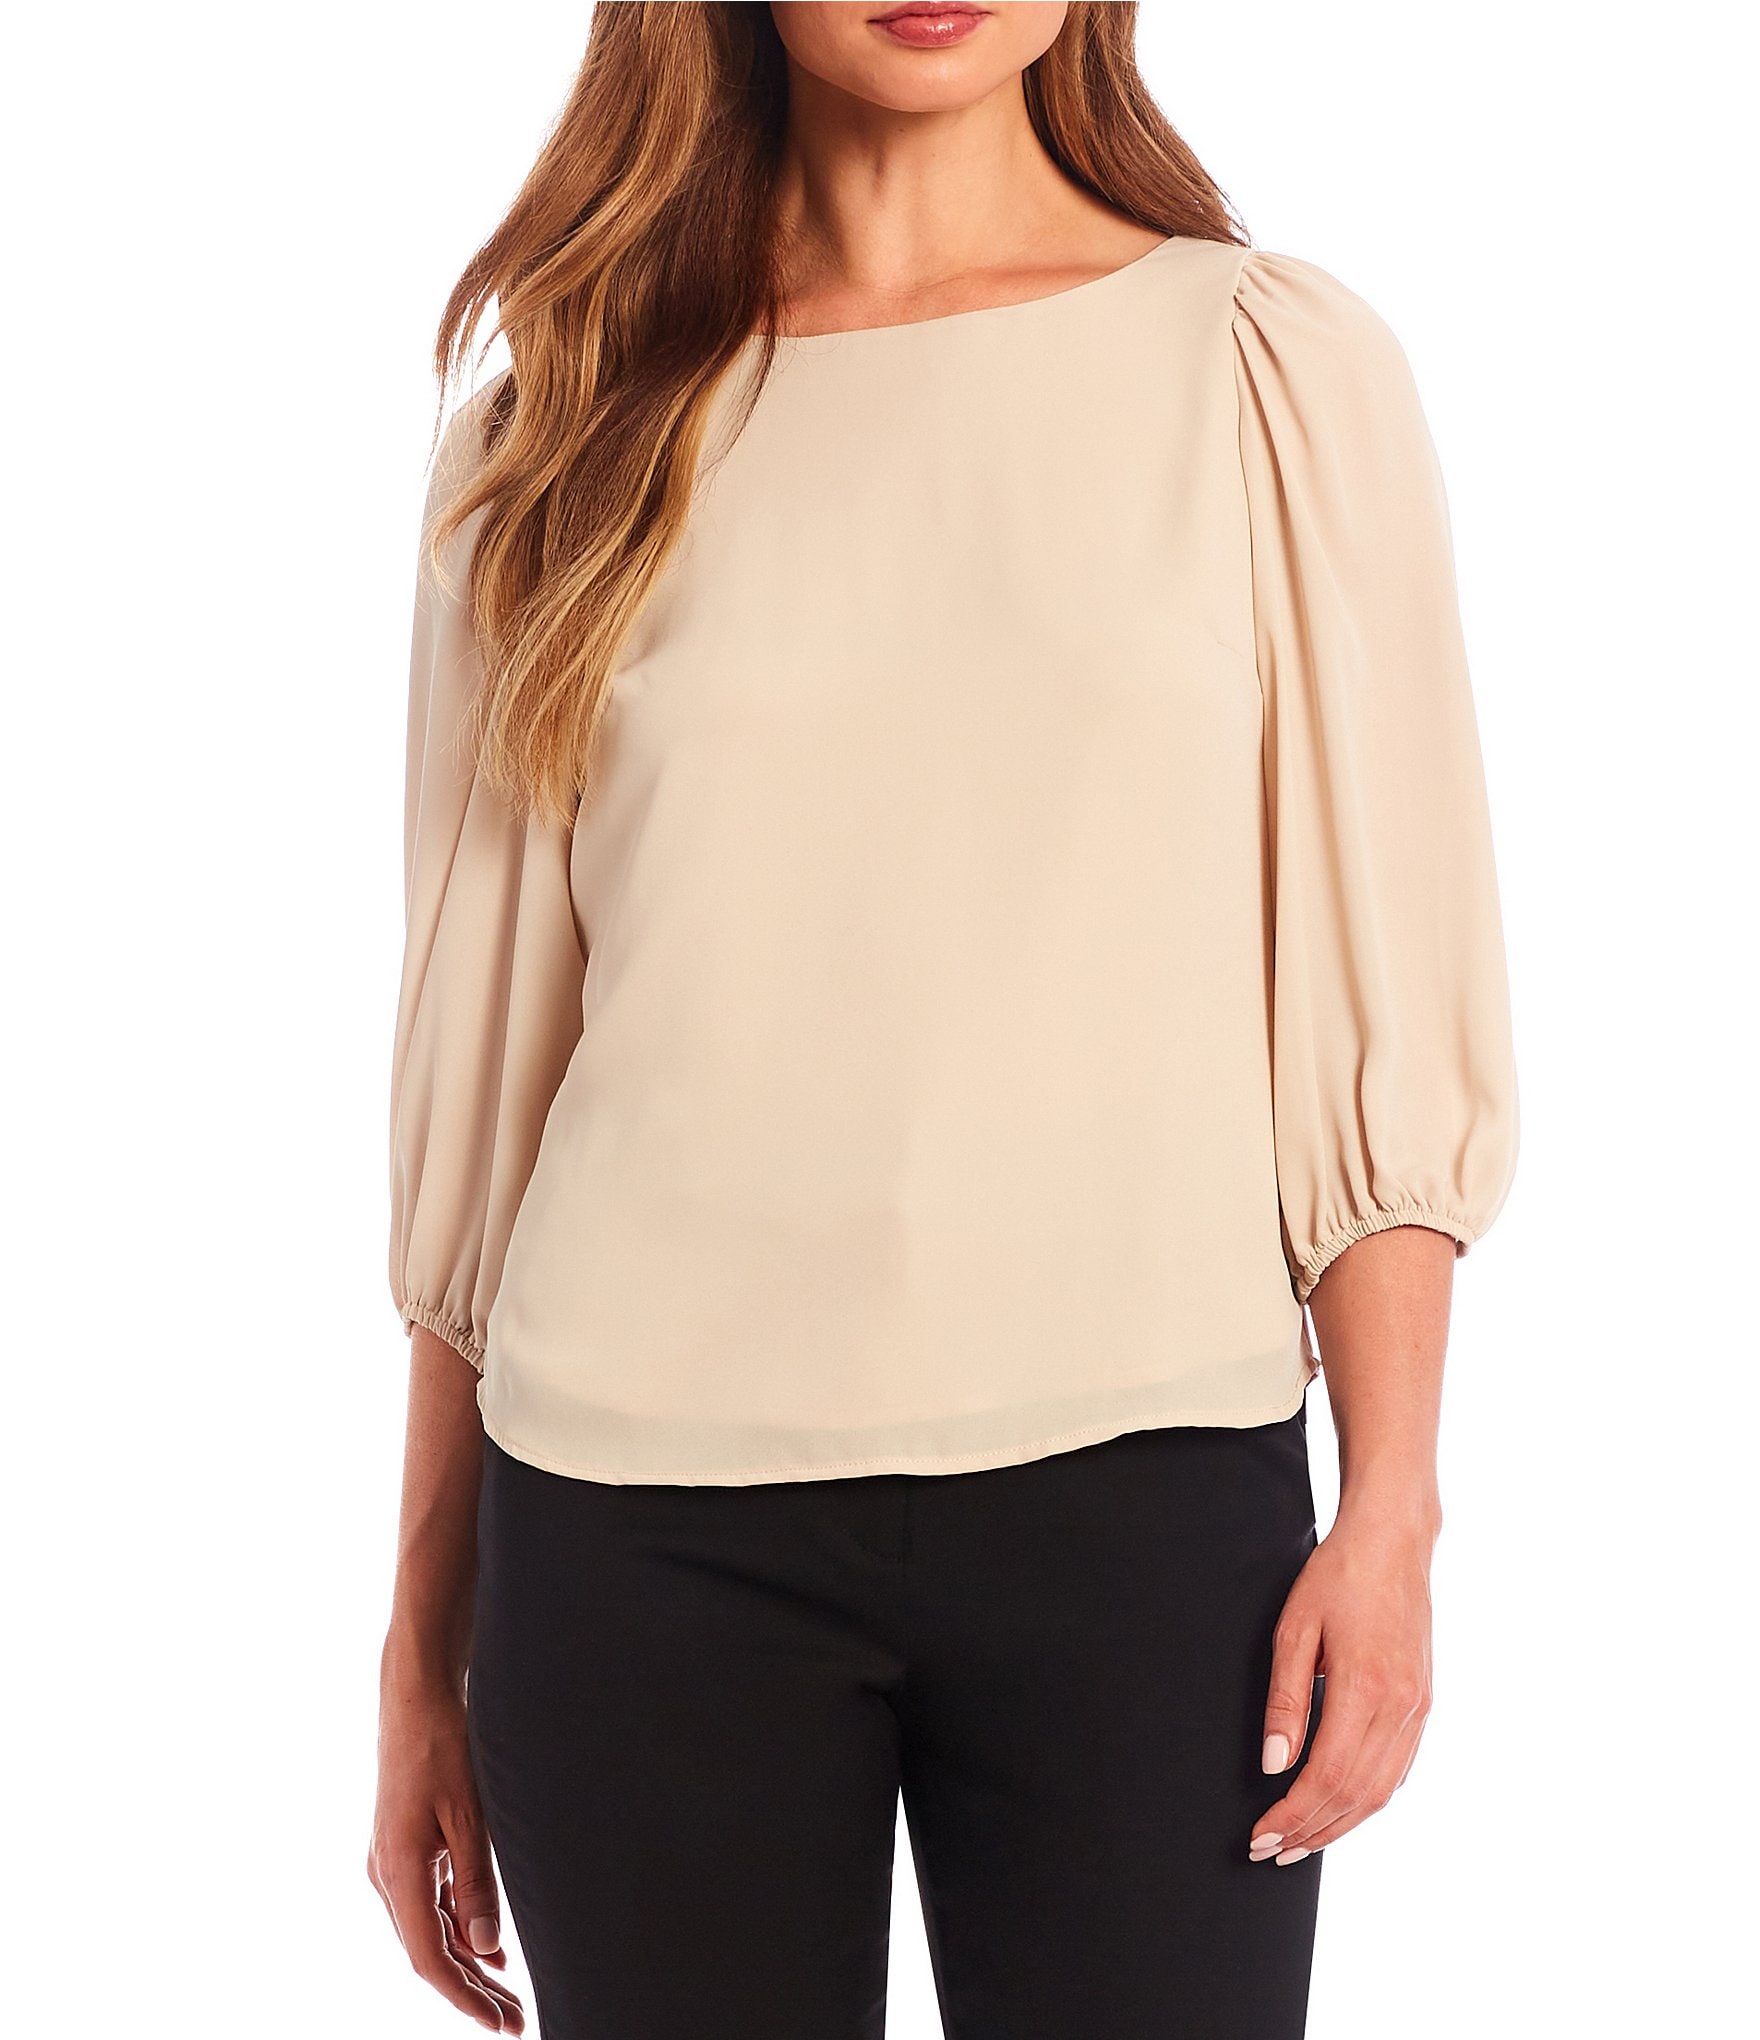 sand shirt: Women's Tops | Dillard's